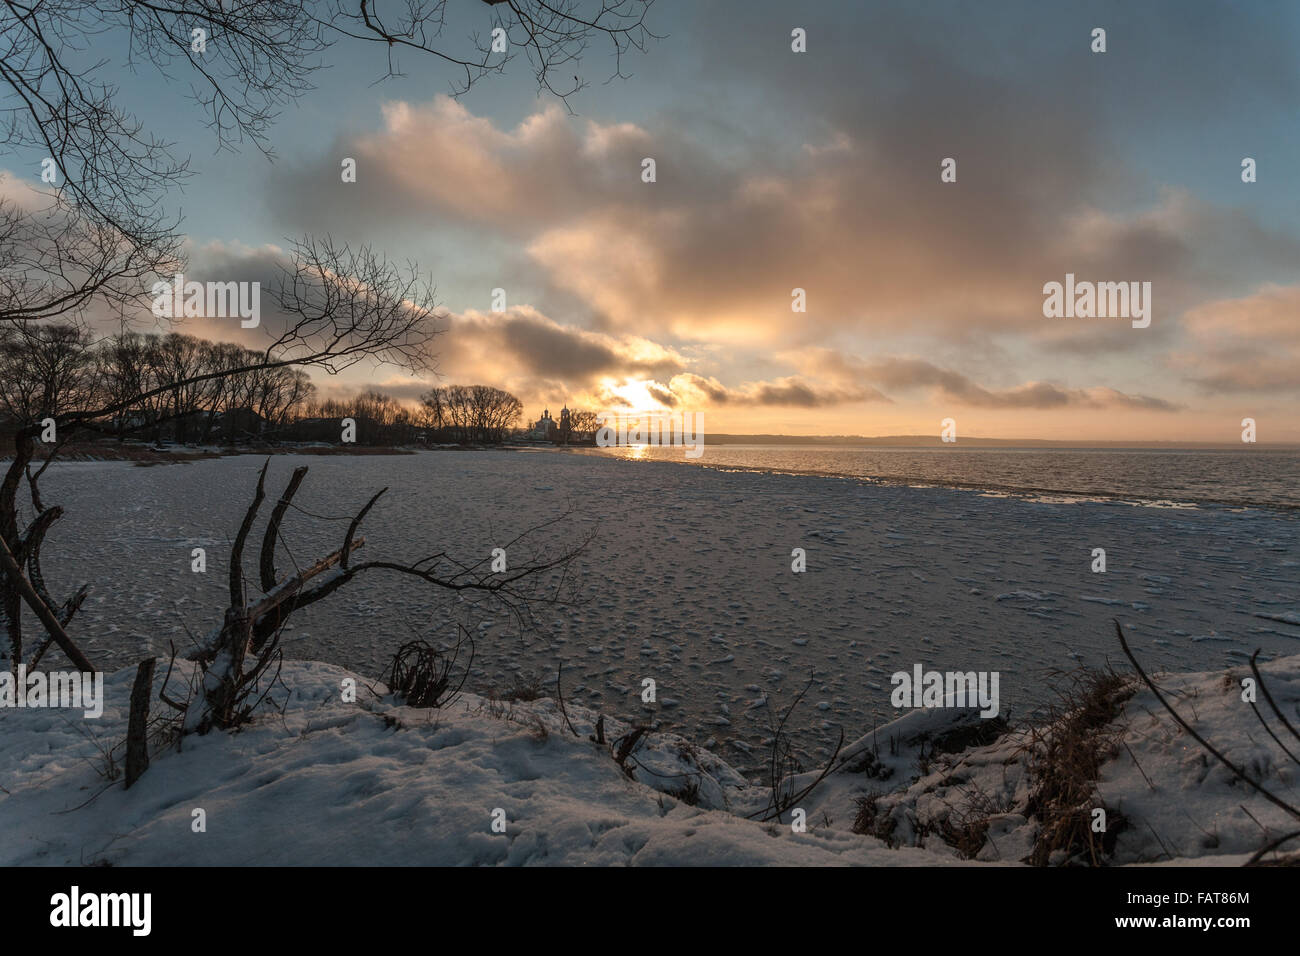 der kalte Rückgang am Ufer des Sees kontrastiert mit warmen Farben des Himmels und der Sonne Stockfoto